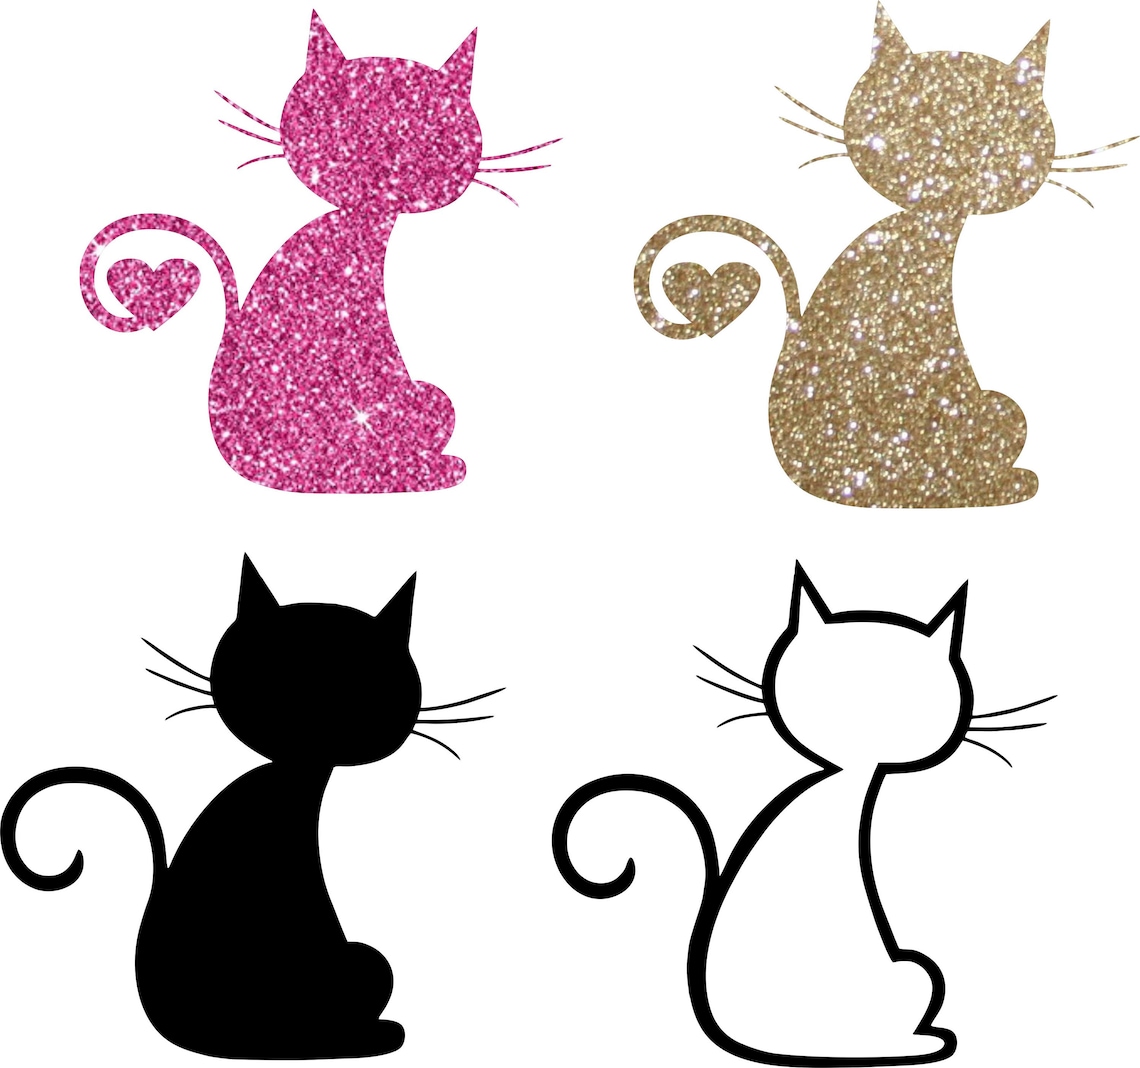 Chat SVG fichier de coupe des cliparts chat cat coupés | Etsy